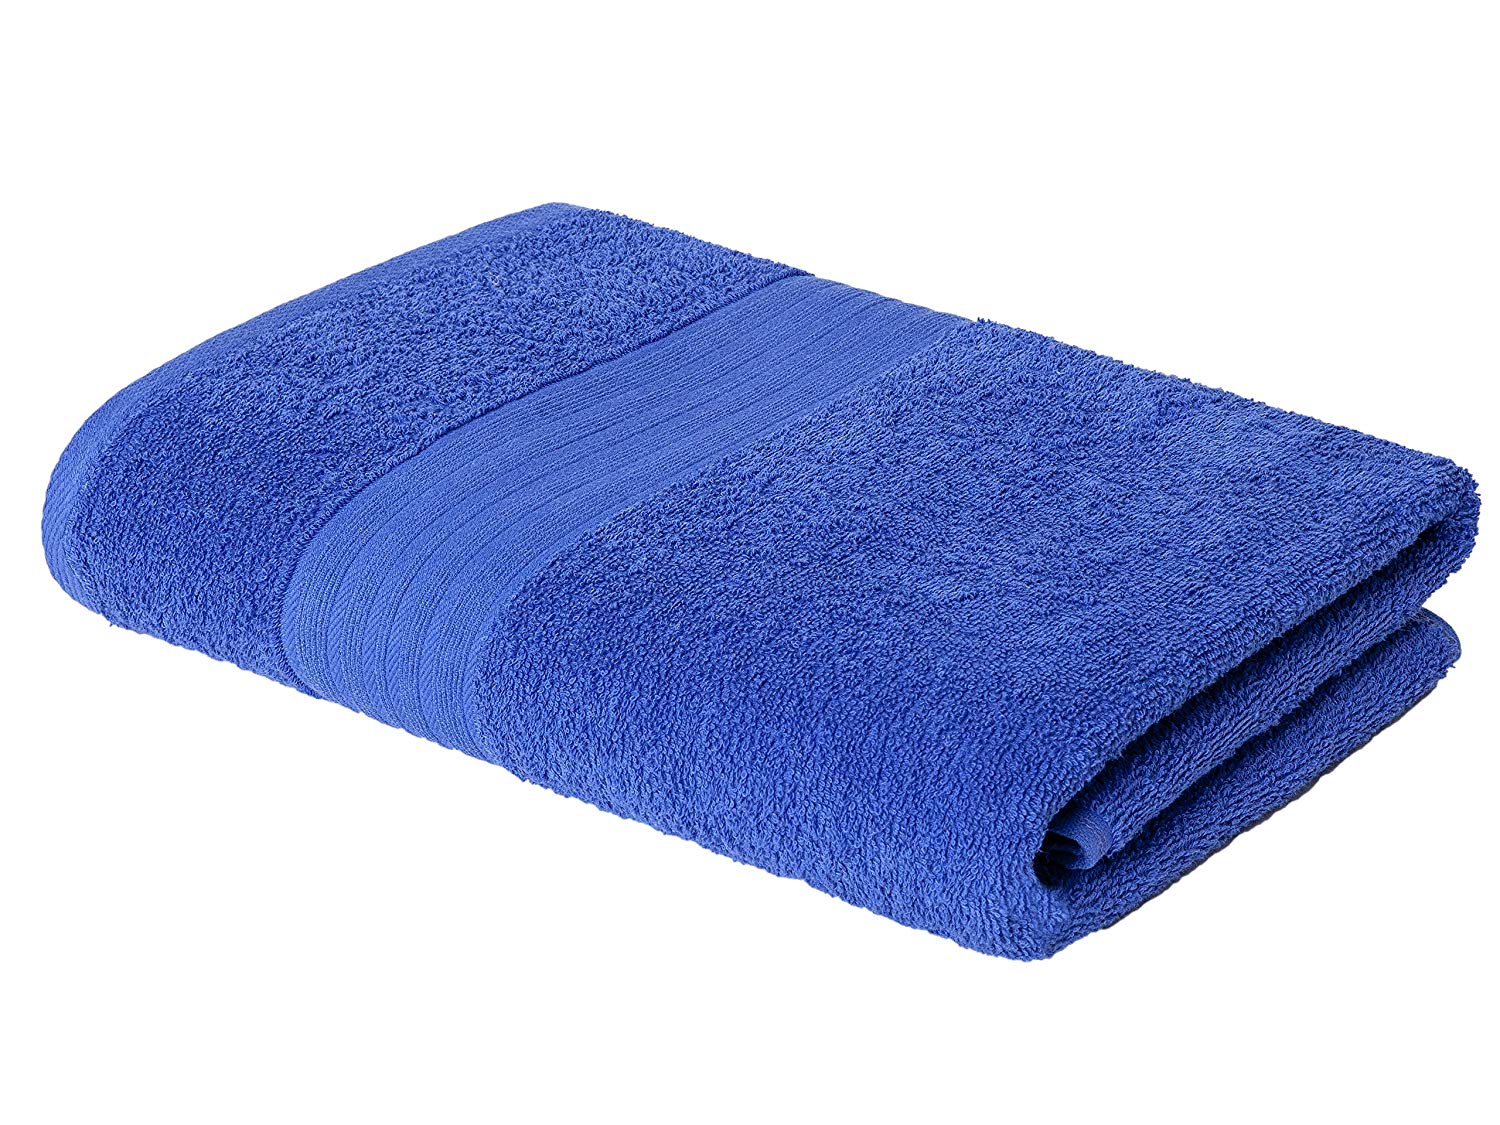 图为示意图，非当事蓝毛巾。